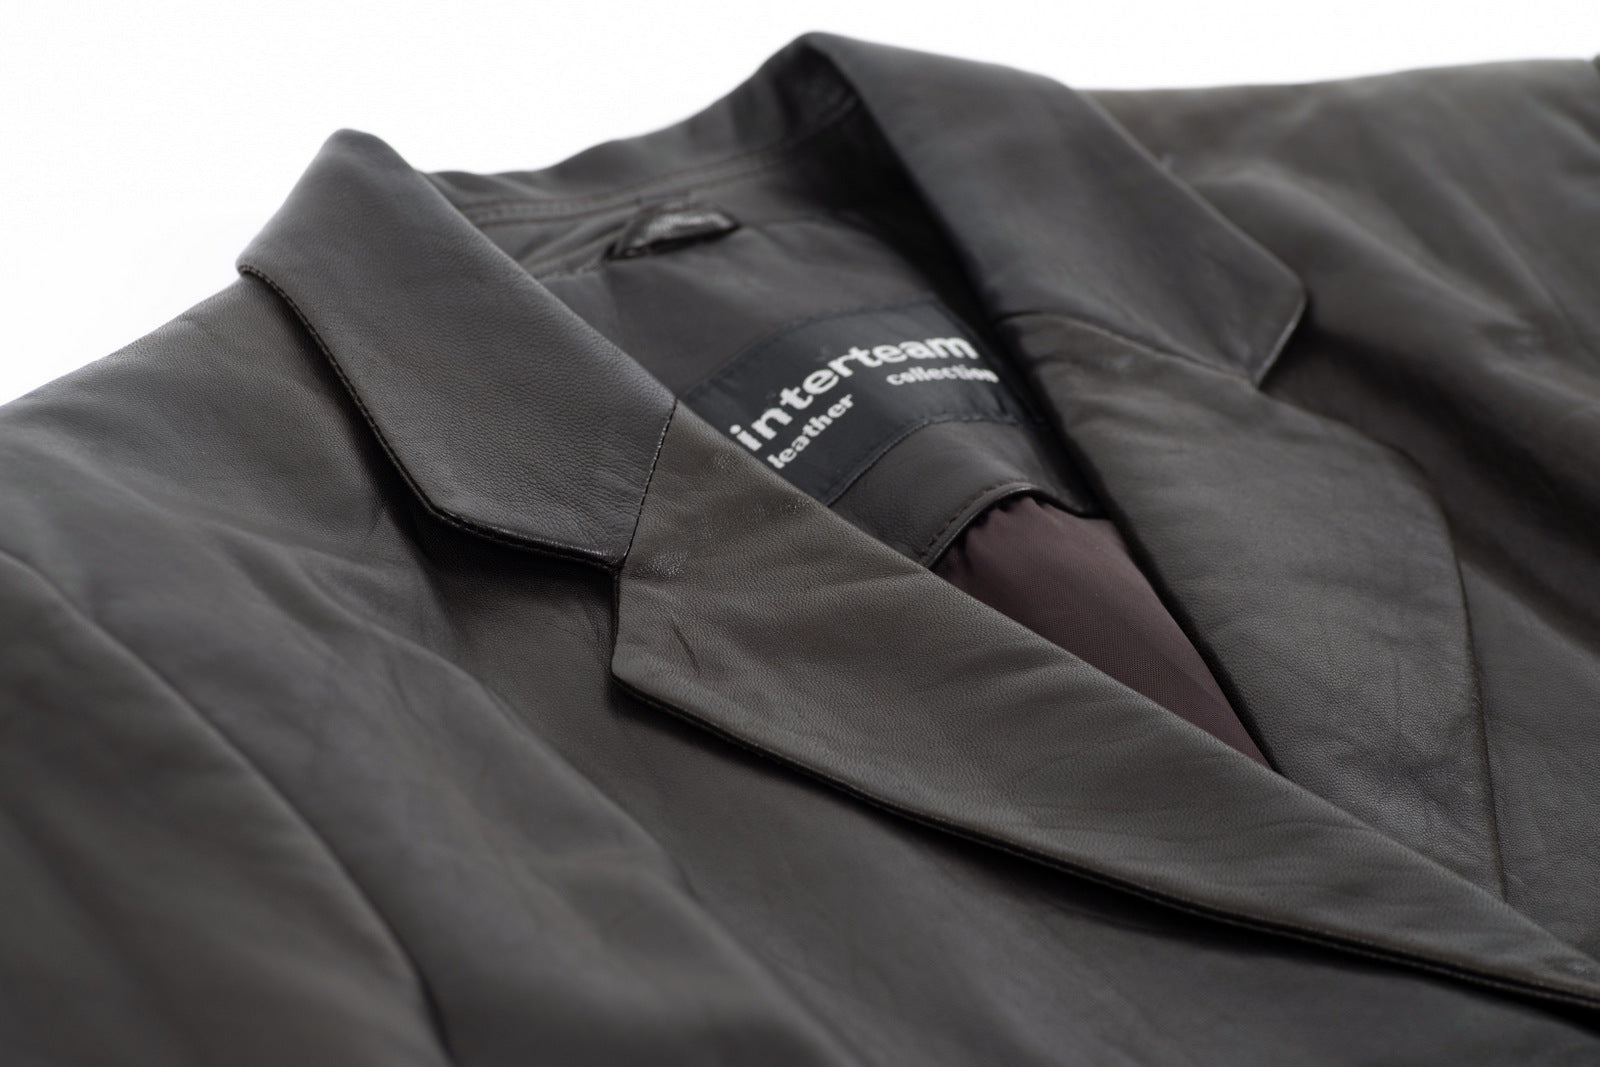 Vintage Dark Khaki Brown Supple Leather Tailored Blazer, Women's M